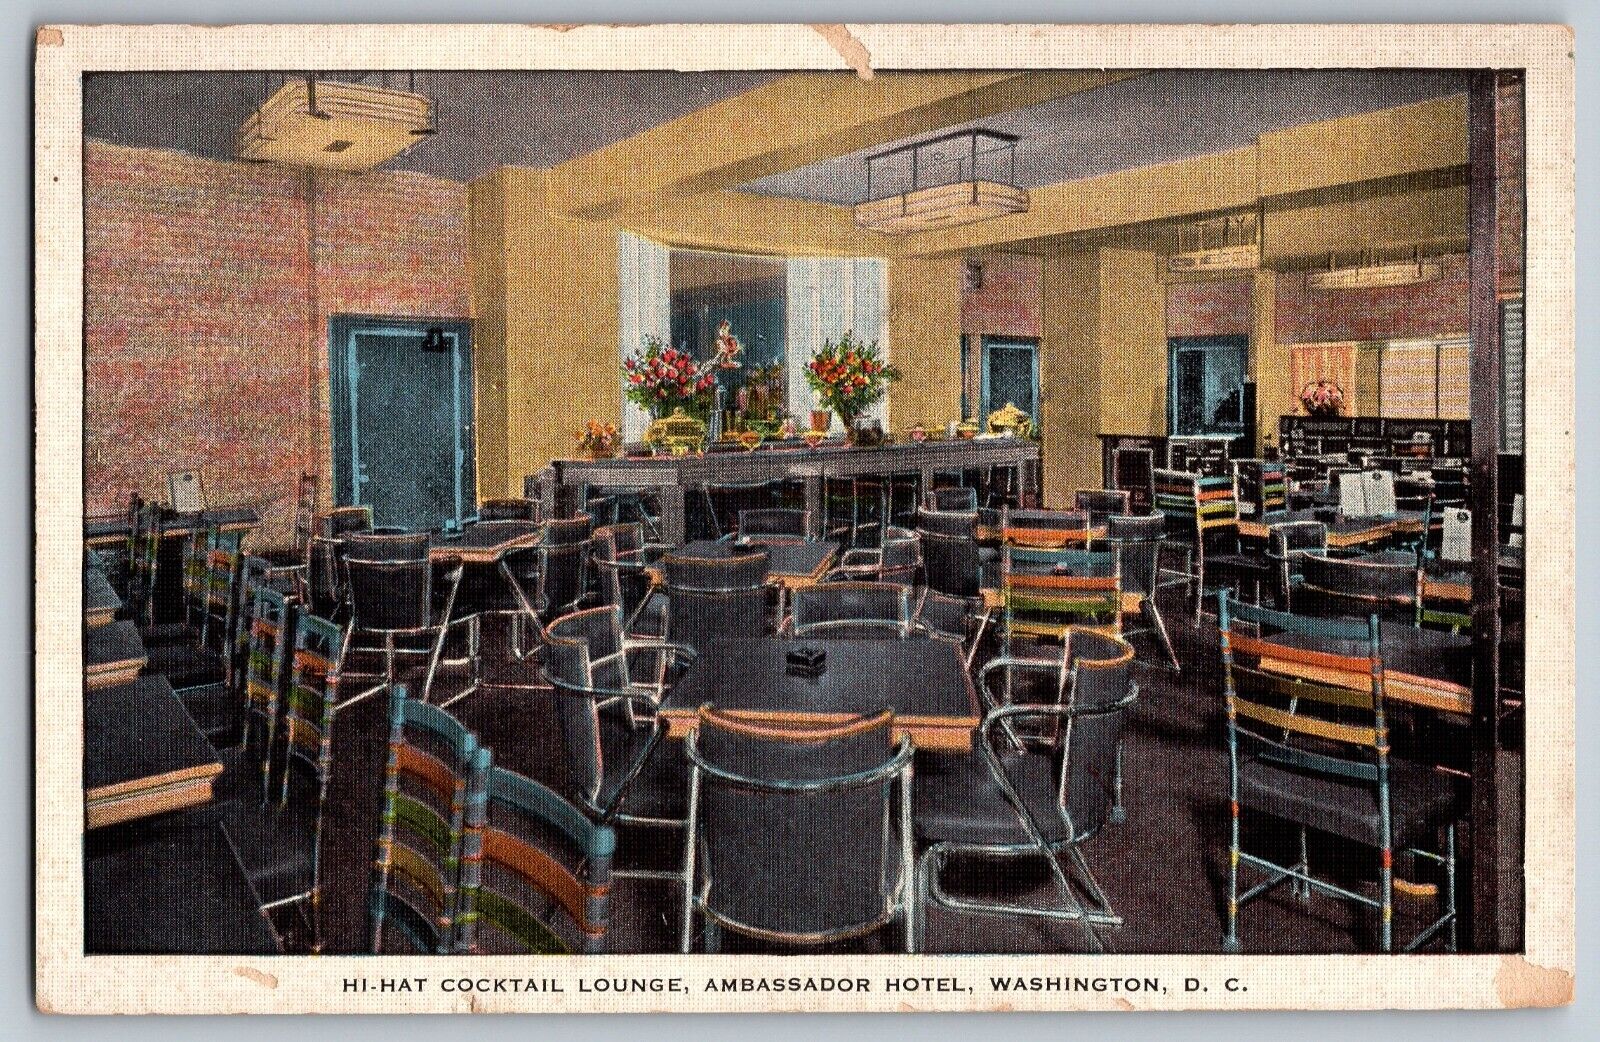 Washington DC - Hi-Hat Cocktail Lounge at Ambassador Hotel - Vintage Postcard